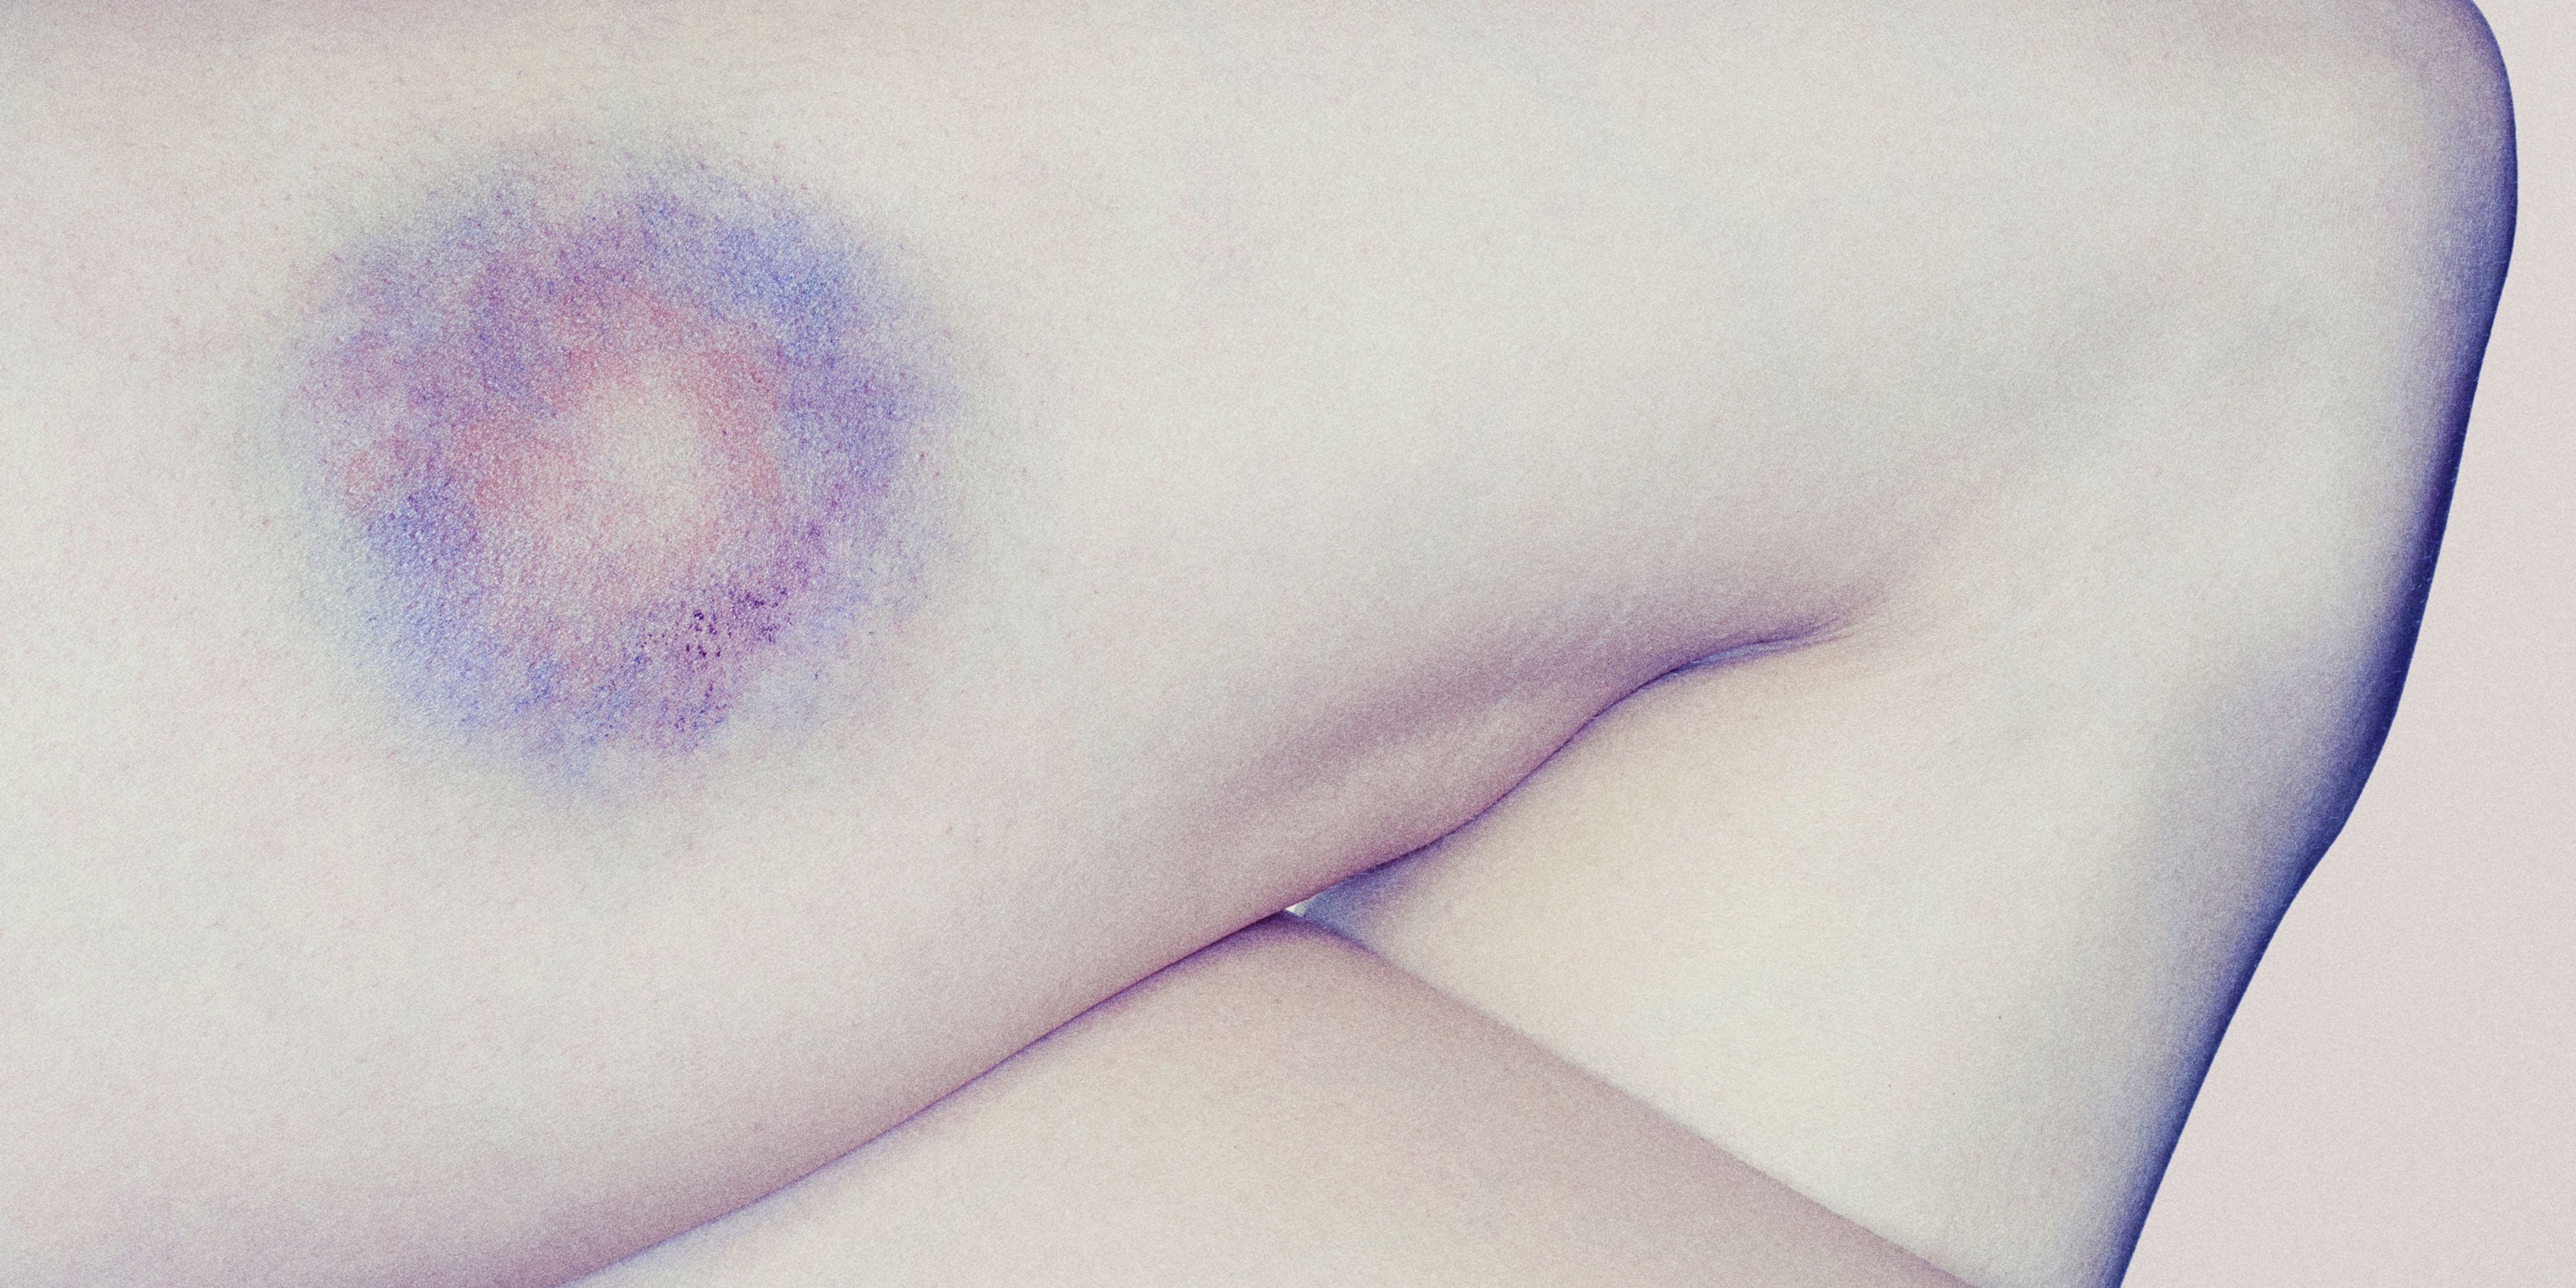 bruise on shoulder